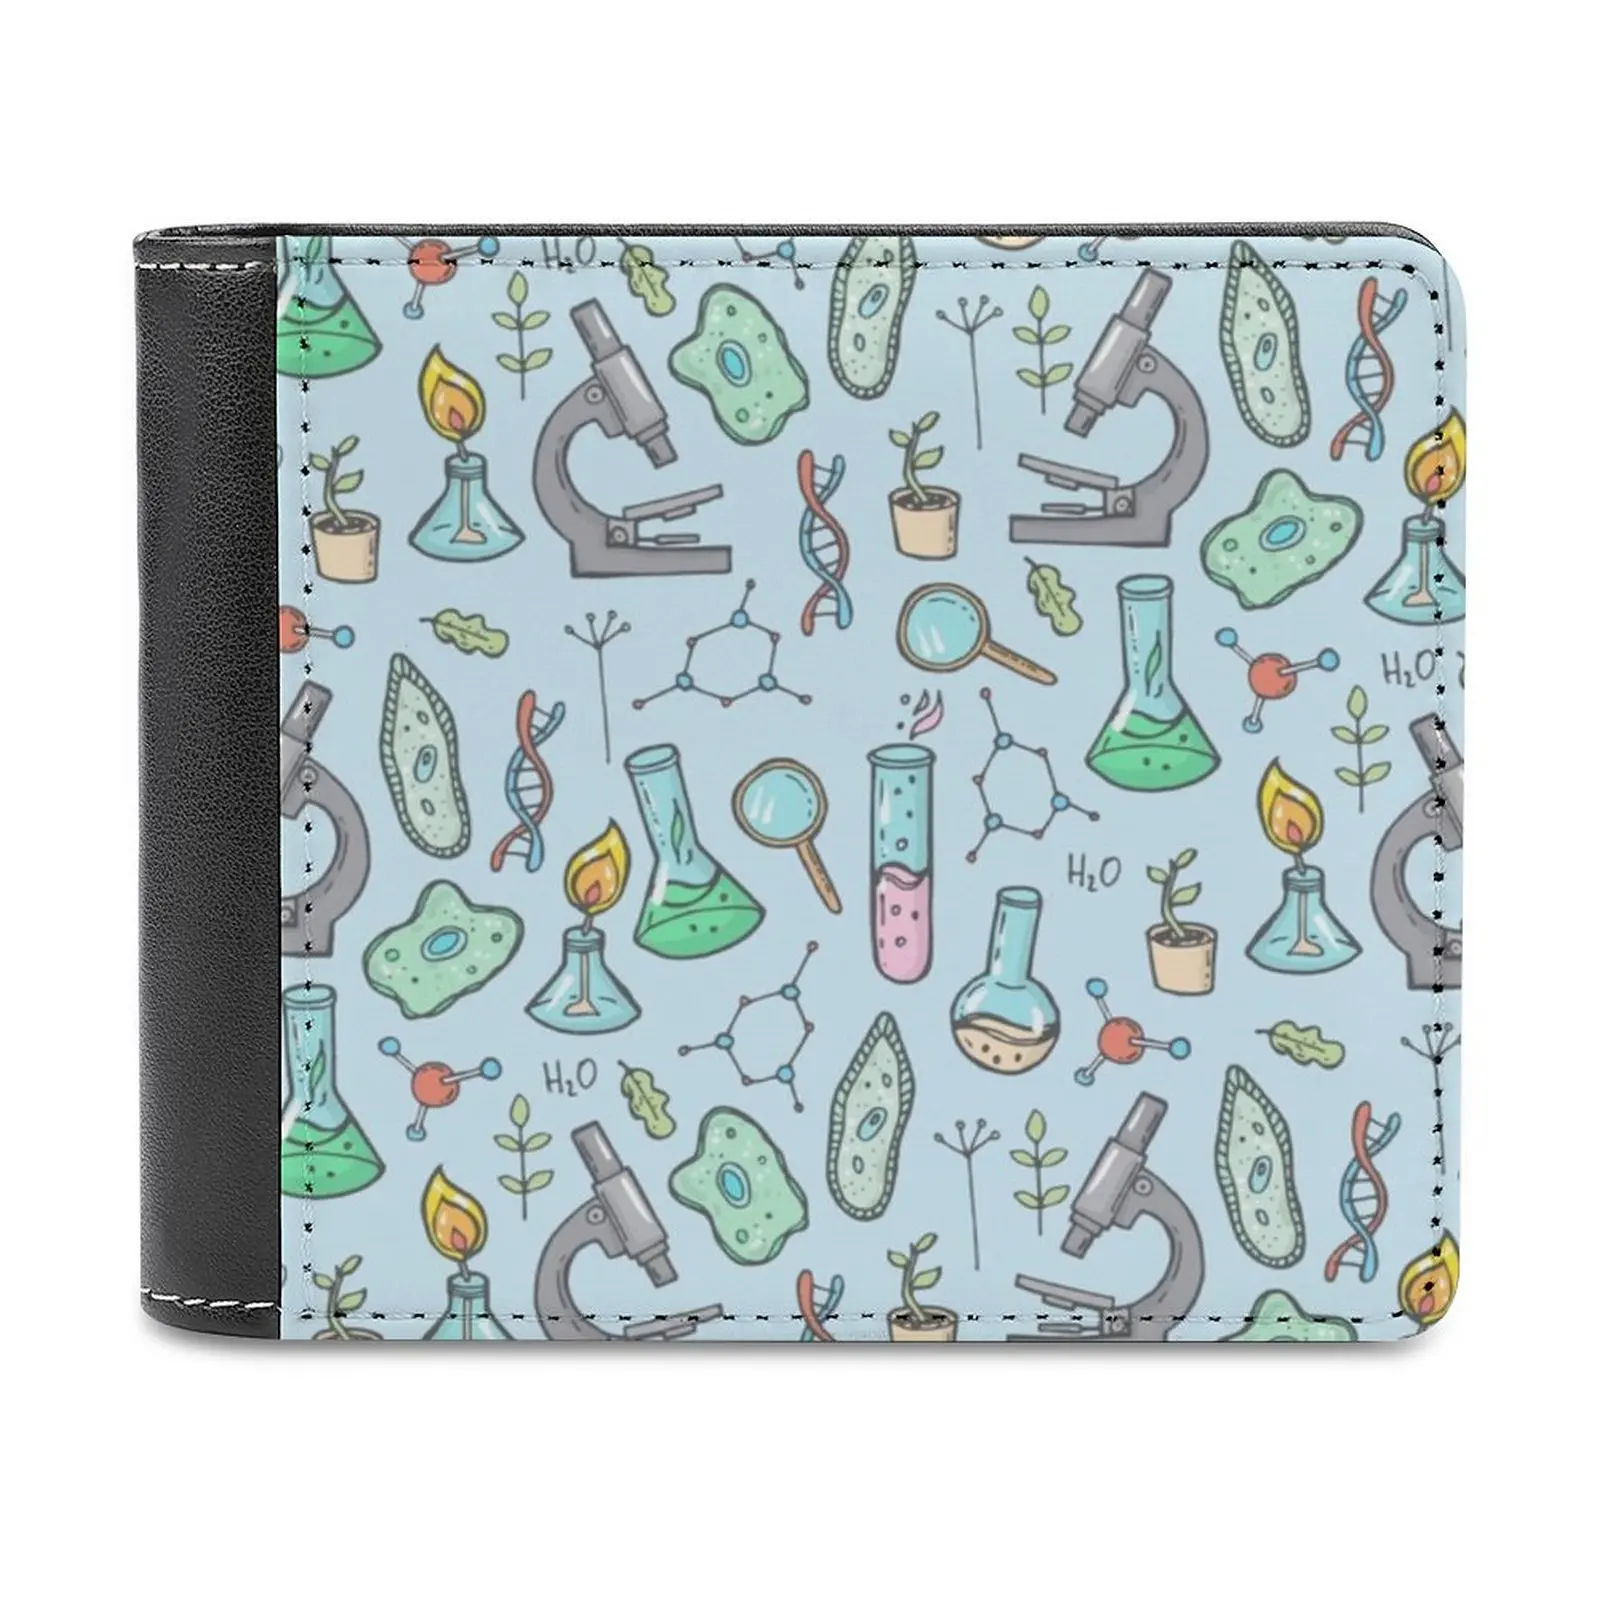 Biyoloji Ve Kimya Desen Deri erkek cüzdanları Sıcak Satış Yeni erkek cüzdanı Trend Kart Paketi Çanta Tüp Mikroskop Amip Görüntü 0